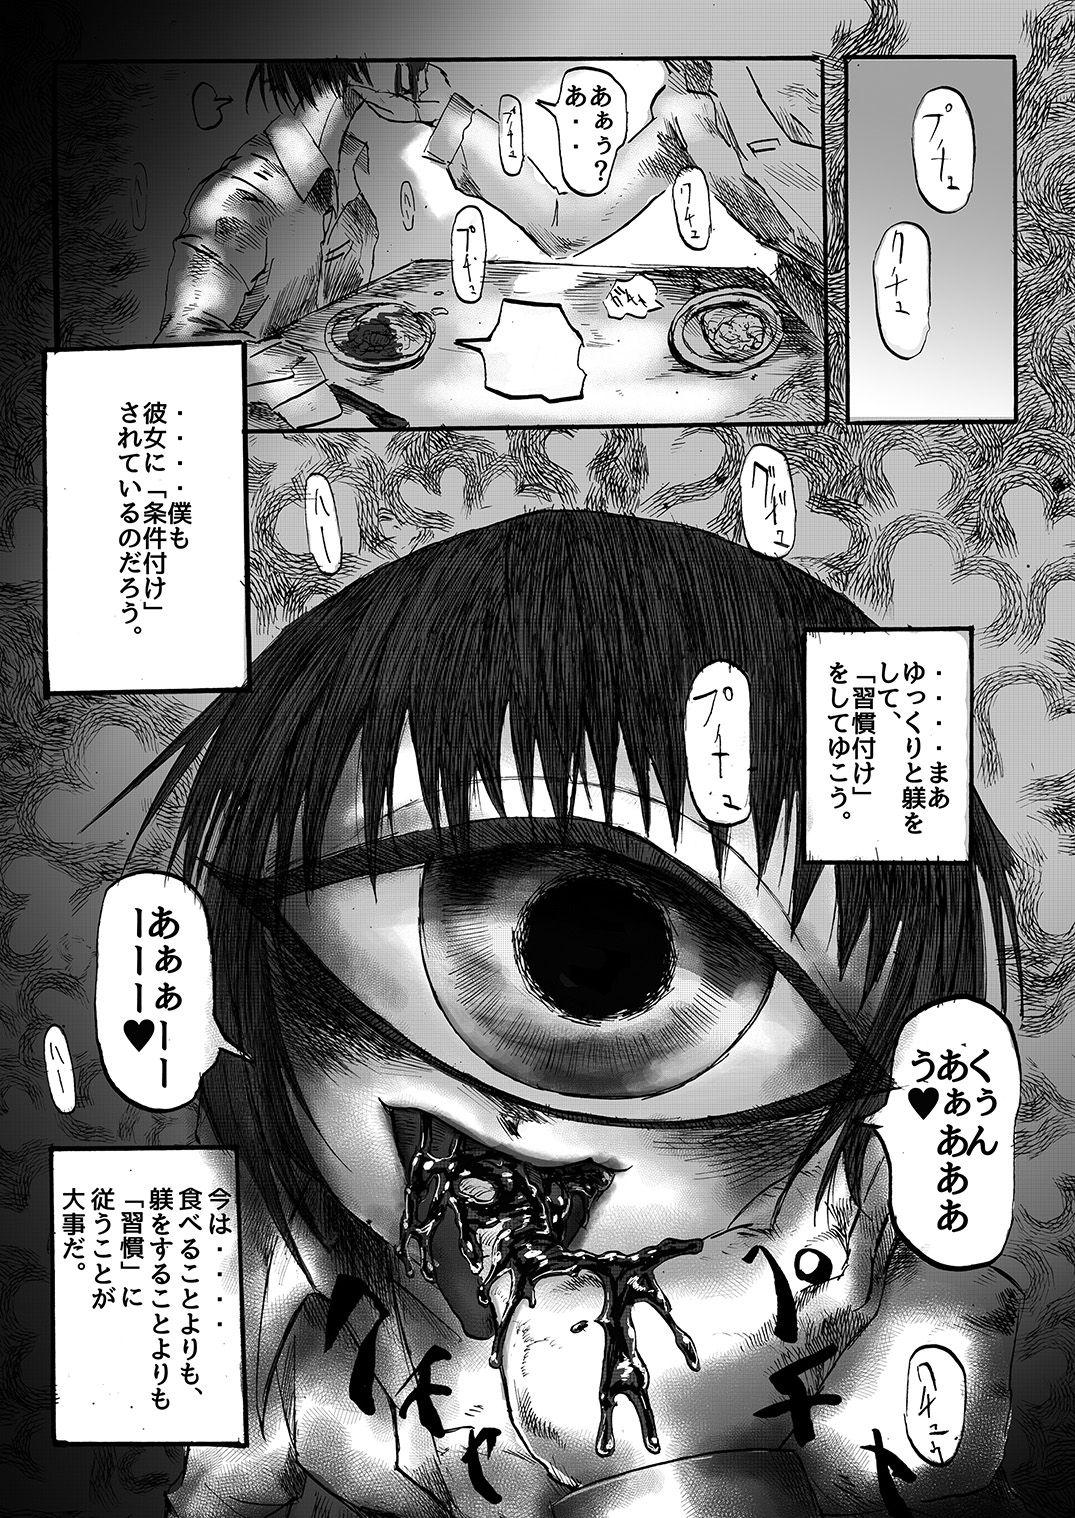 Tangan-chan Hirotte Kau Manga 31